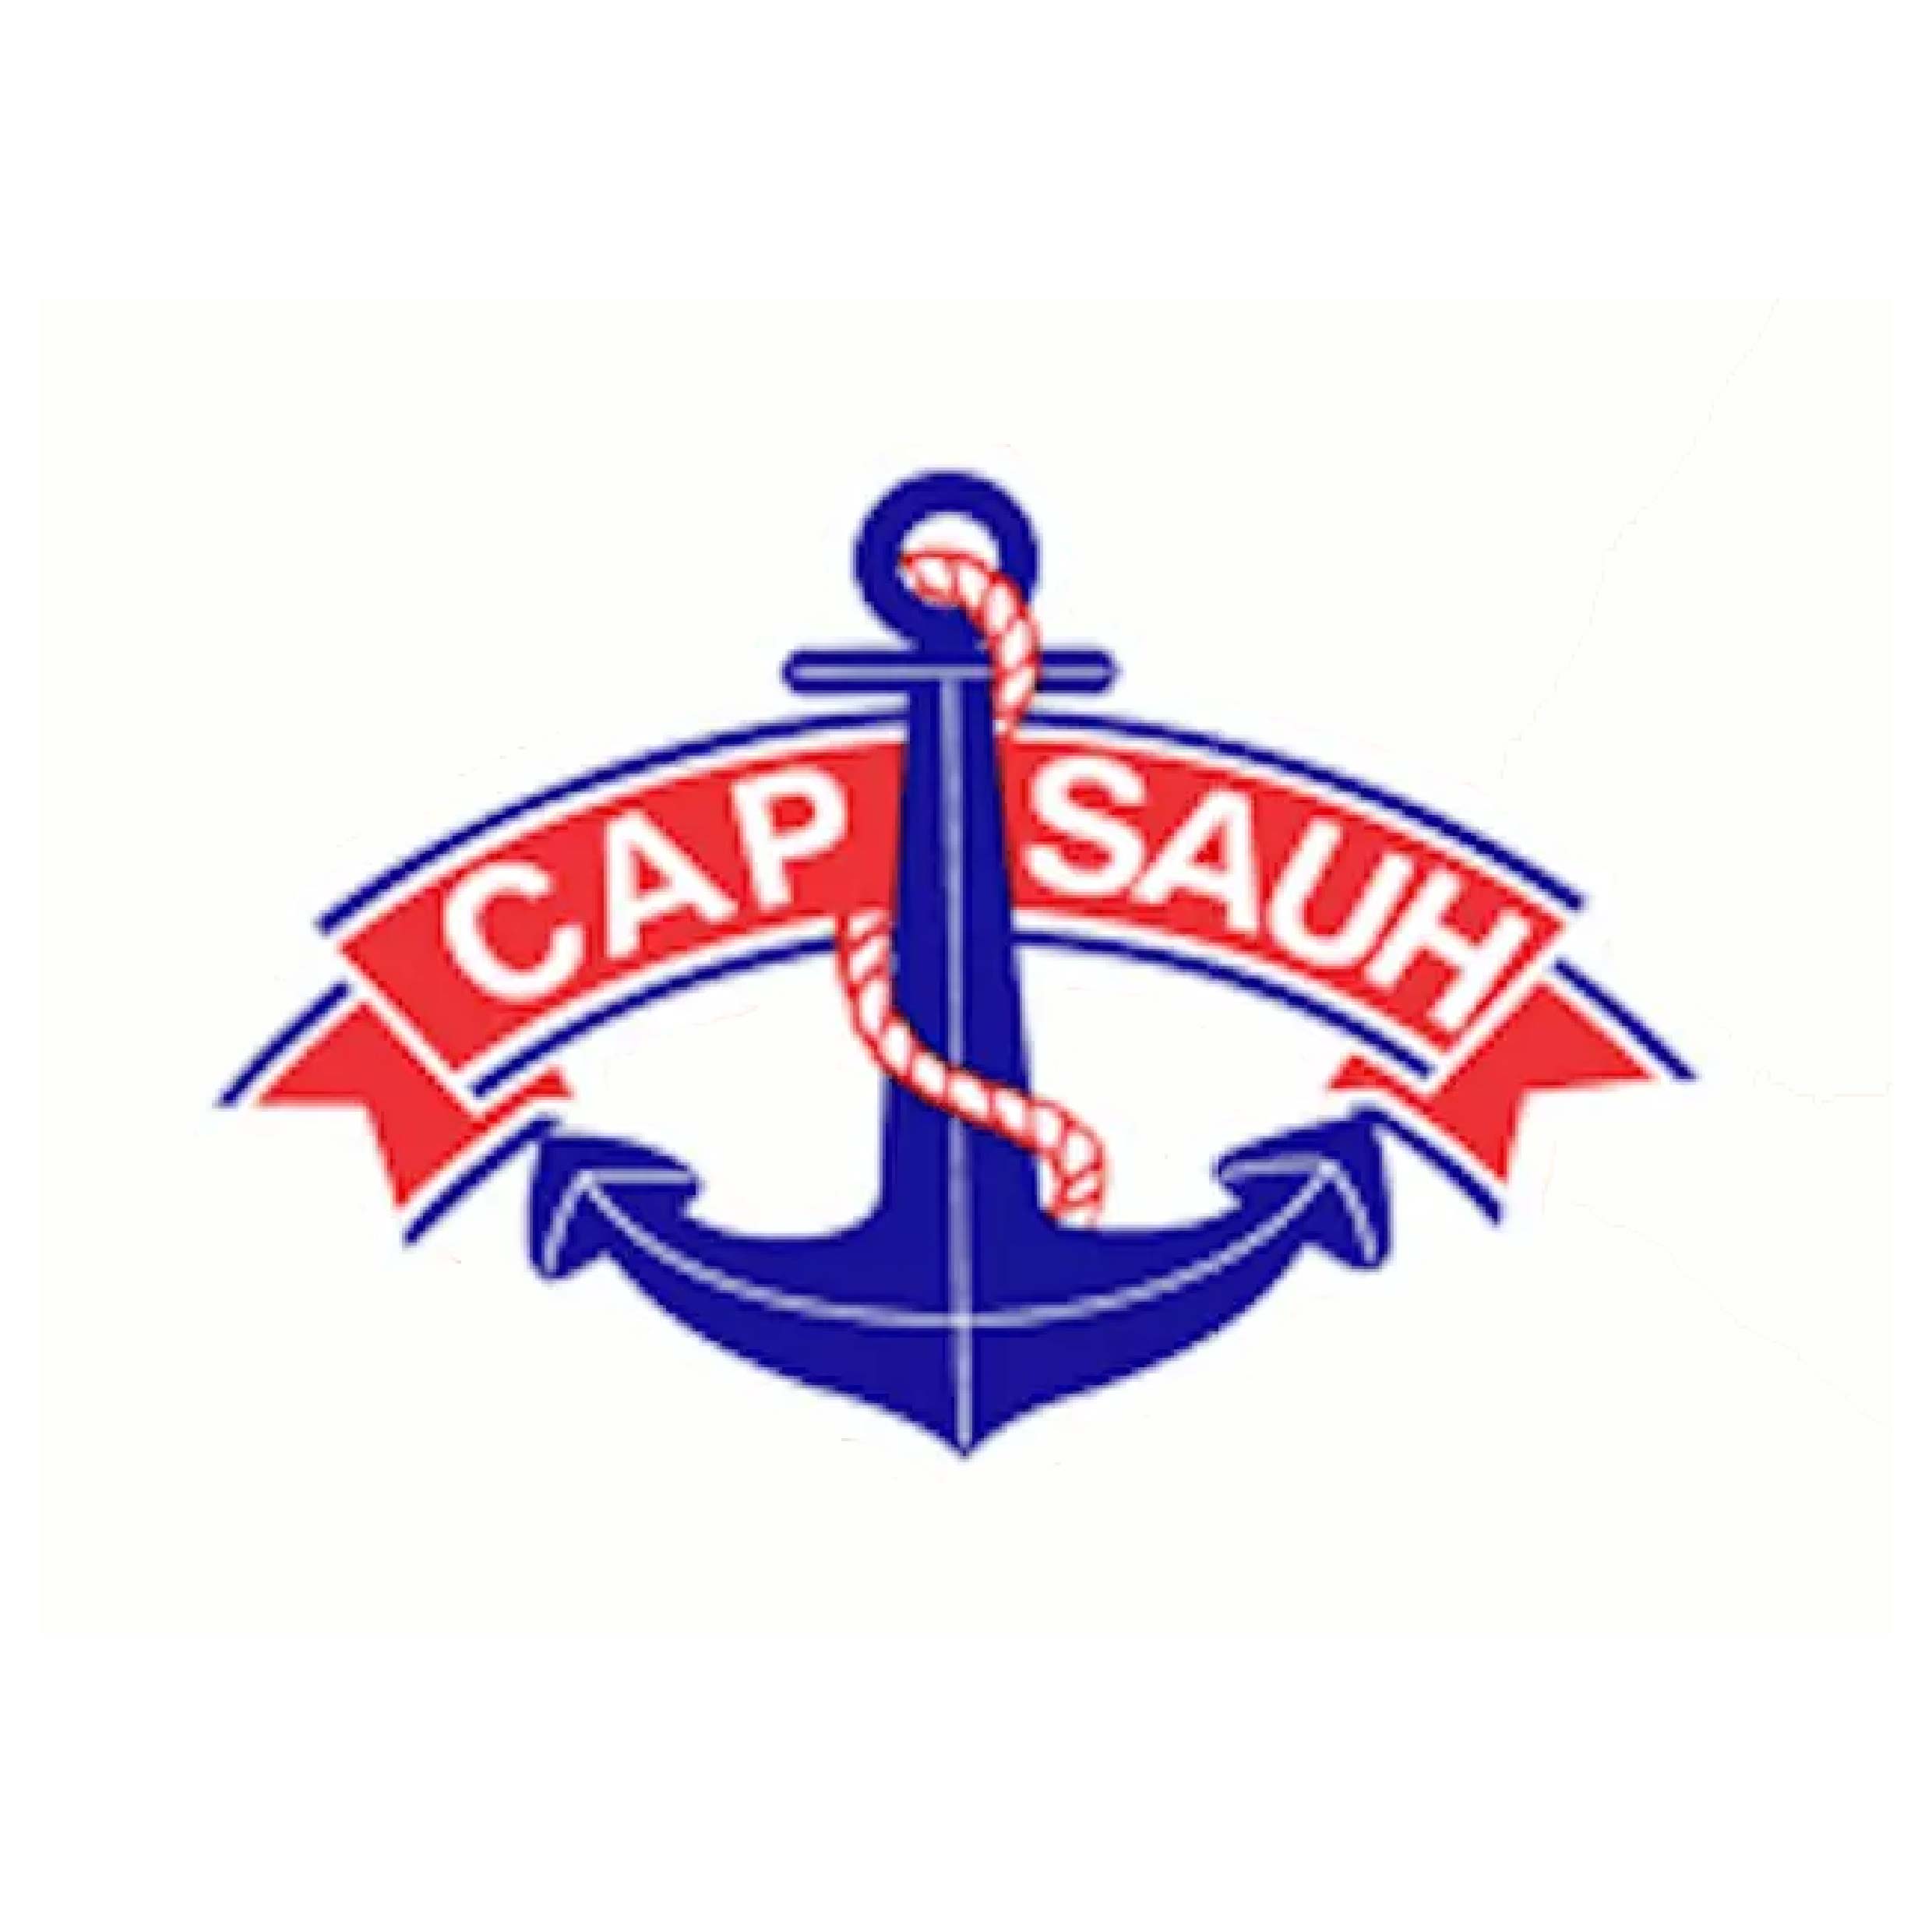 Cap Sauh